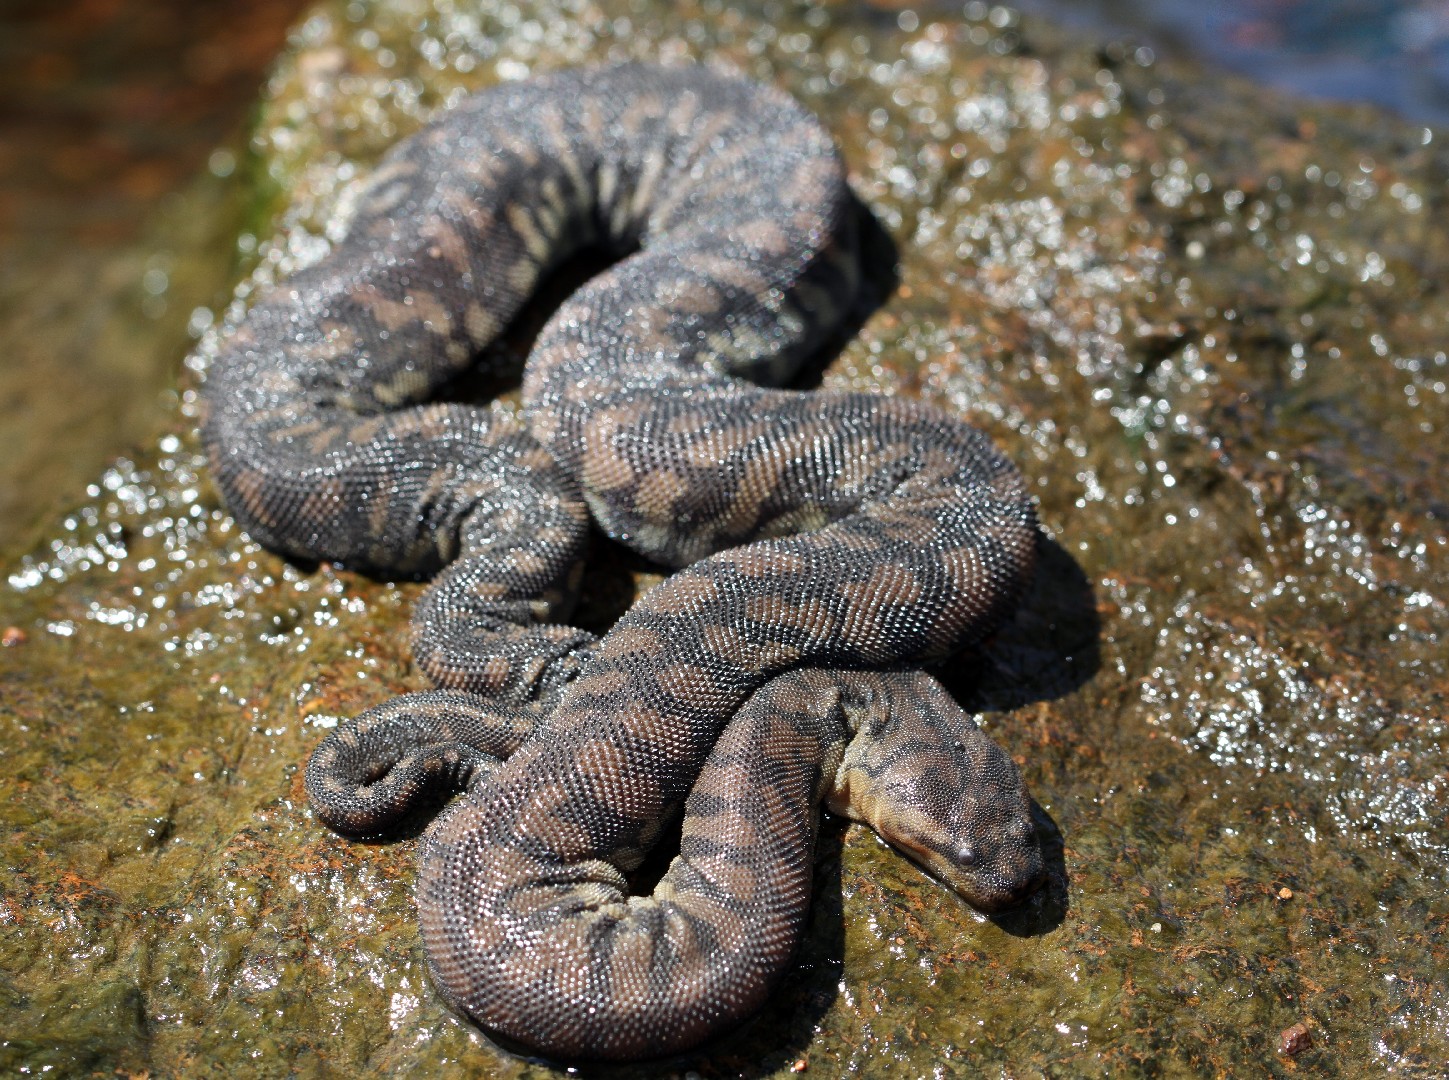 Arafuran file snake (Acrochordus arafurae)